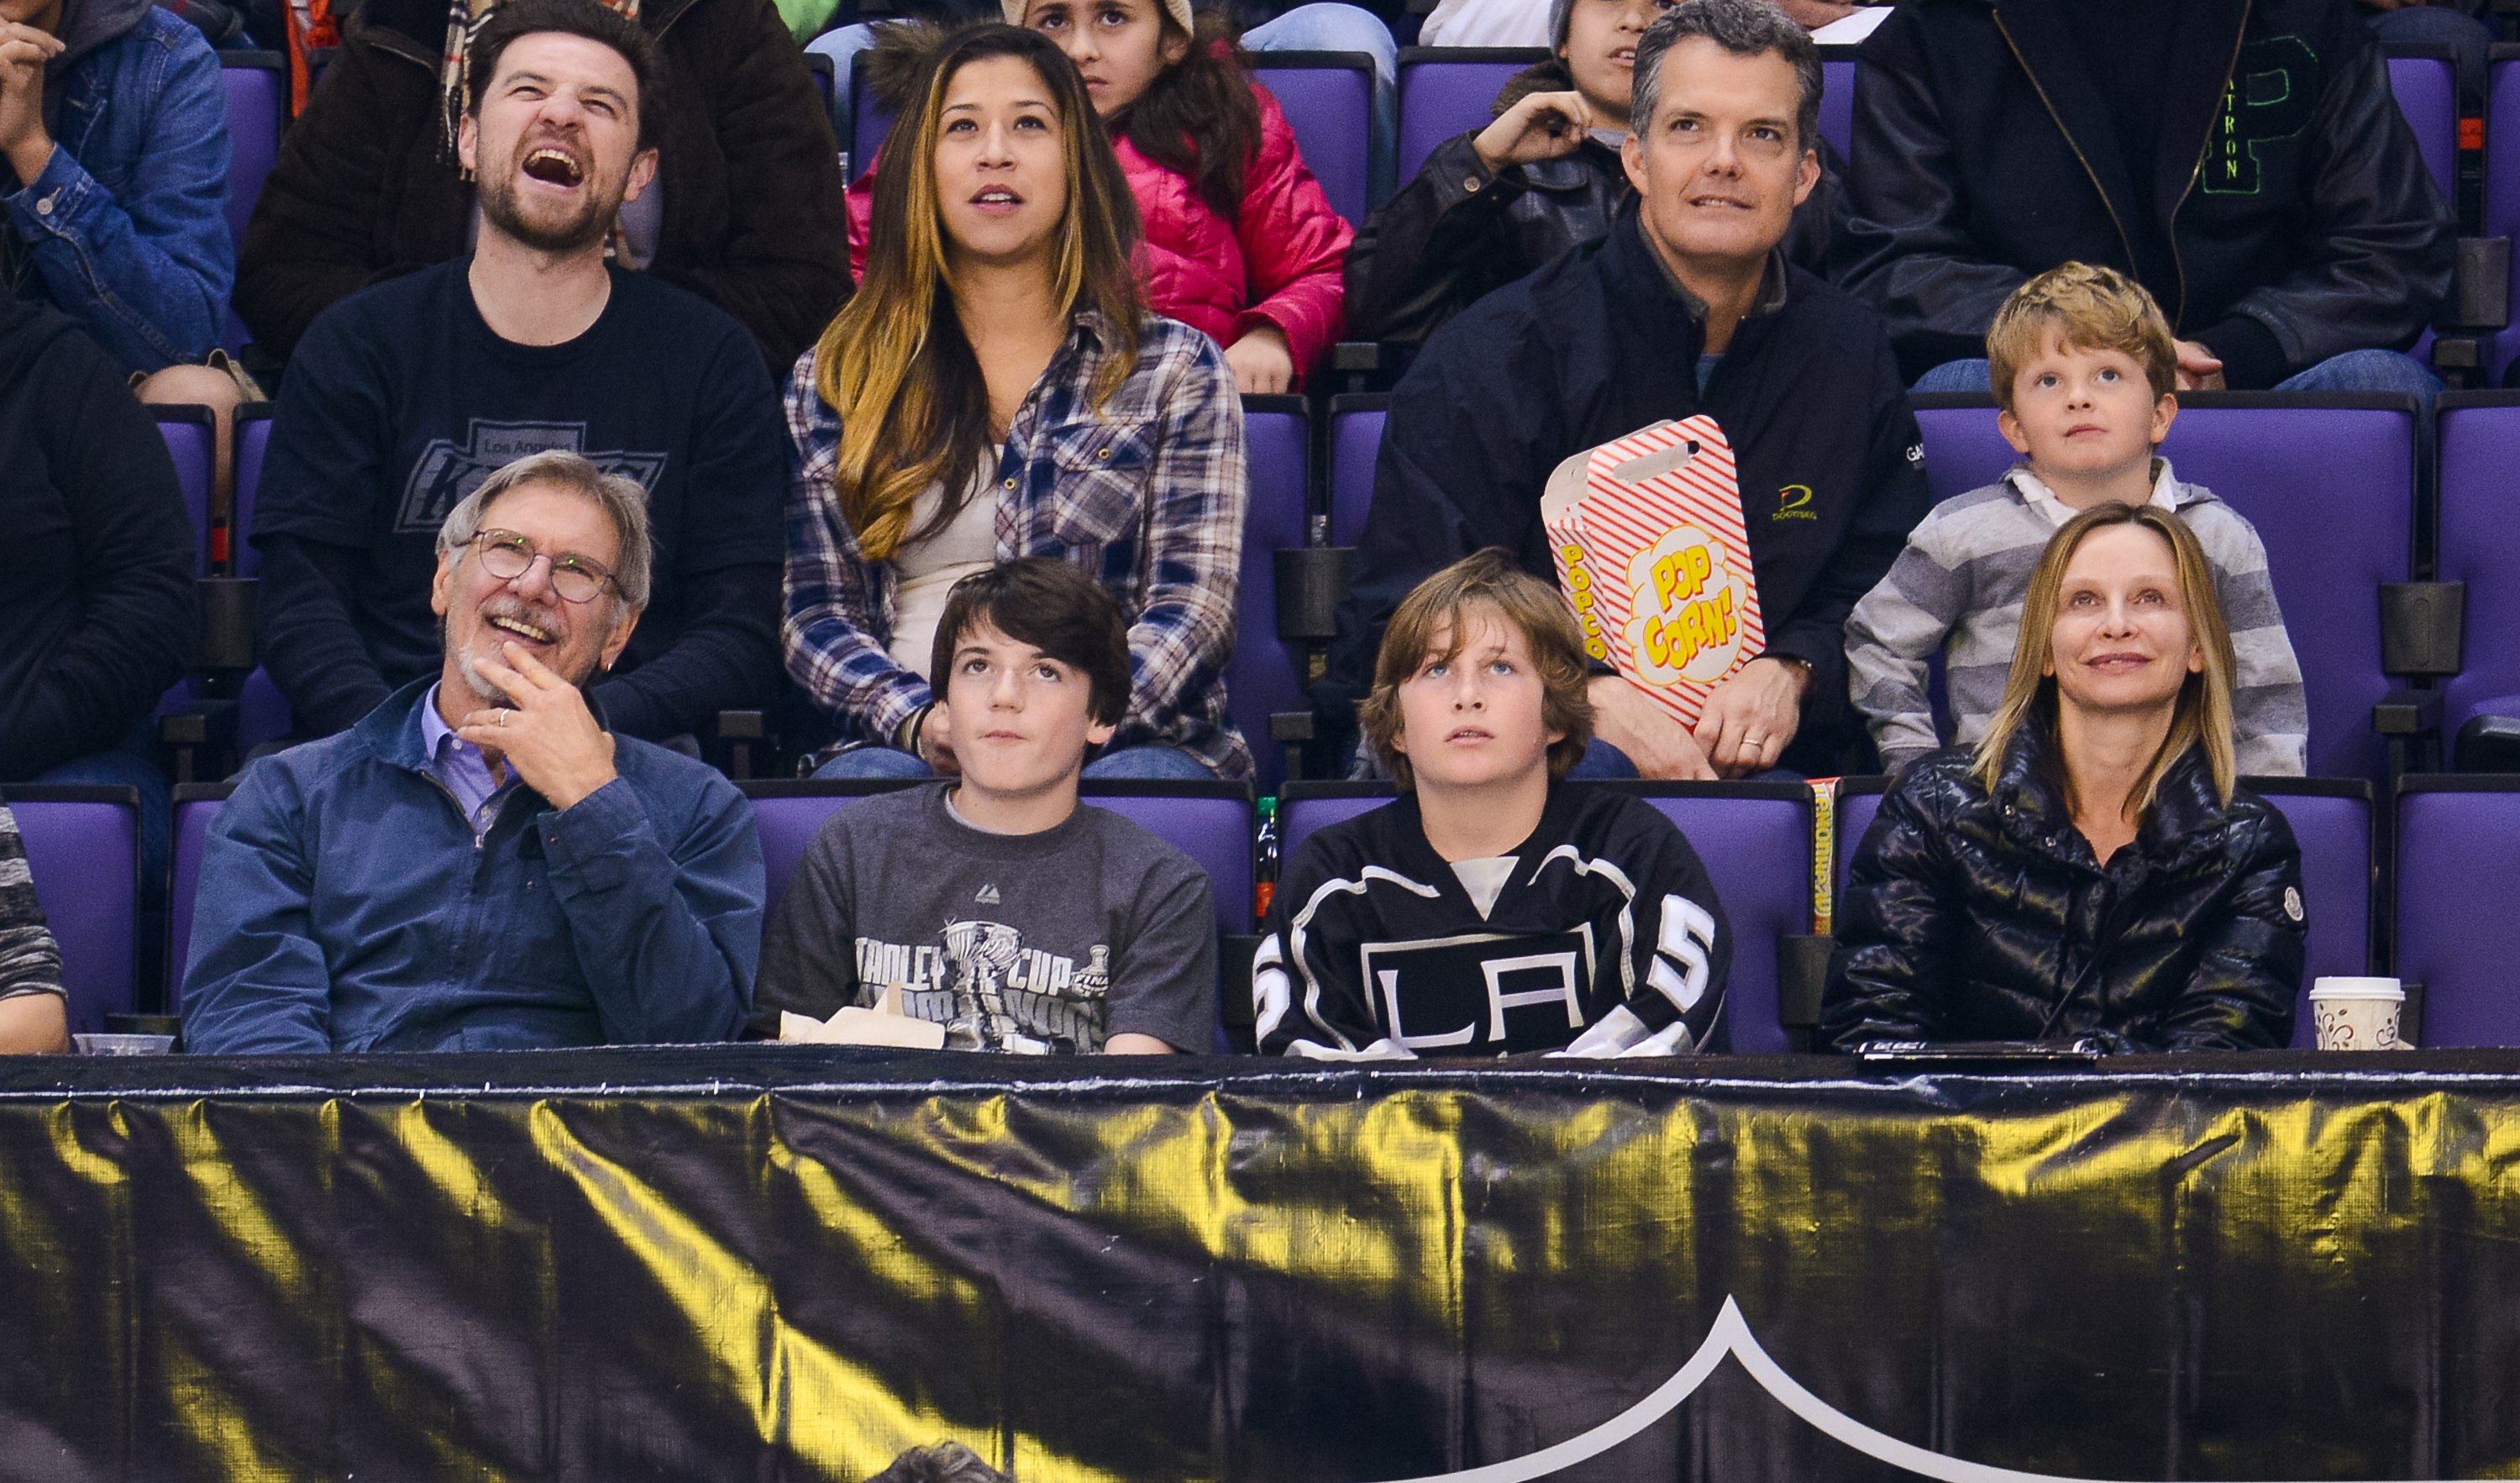 Harrison Ford, Liam Flockhart y Calista Flockhart asisten a un partido de hockey en el Staples Center el 1 de marzo de 2014 en Los Ángeles, California | Foto: Getty Images